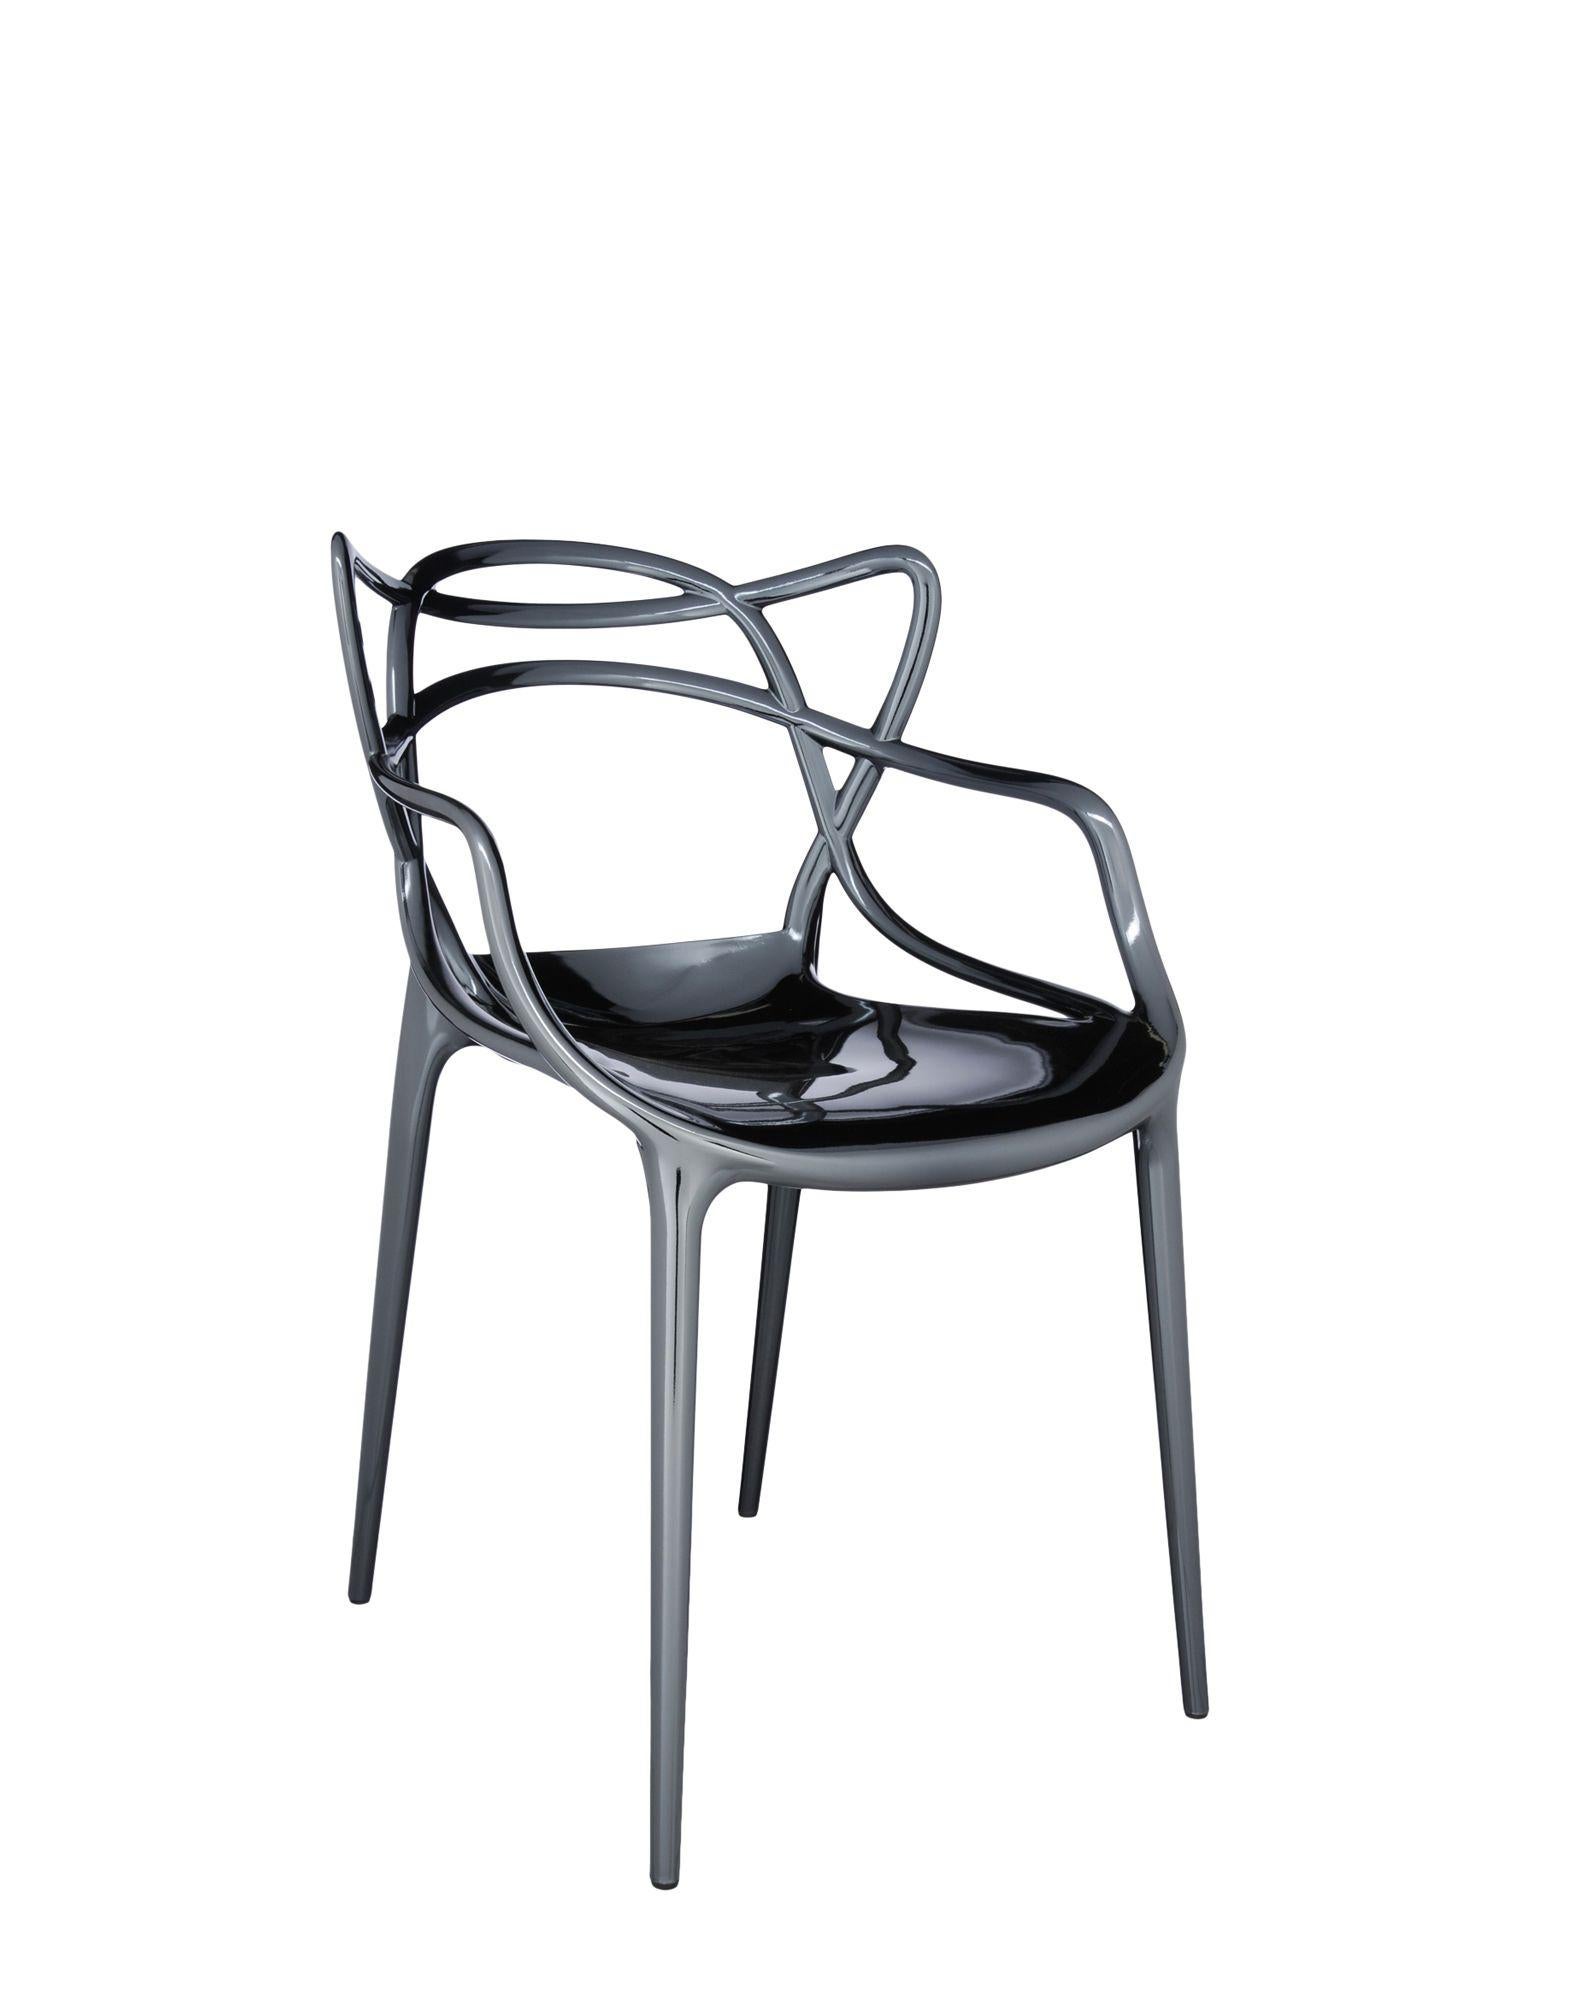 Der Masters Chair ist eine kraftvolle Hommage an drei symbolträchtige Stühle, die vom kreativen Genie Starcks neu gelesen und interpretiert wurden. Die unverwechselbaren Silhouetten der Serie 7 von Arne Jacobsen, des Tulip-Sessels von Eero Saarinen